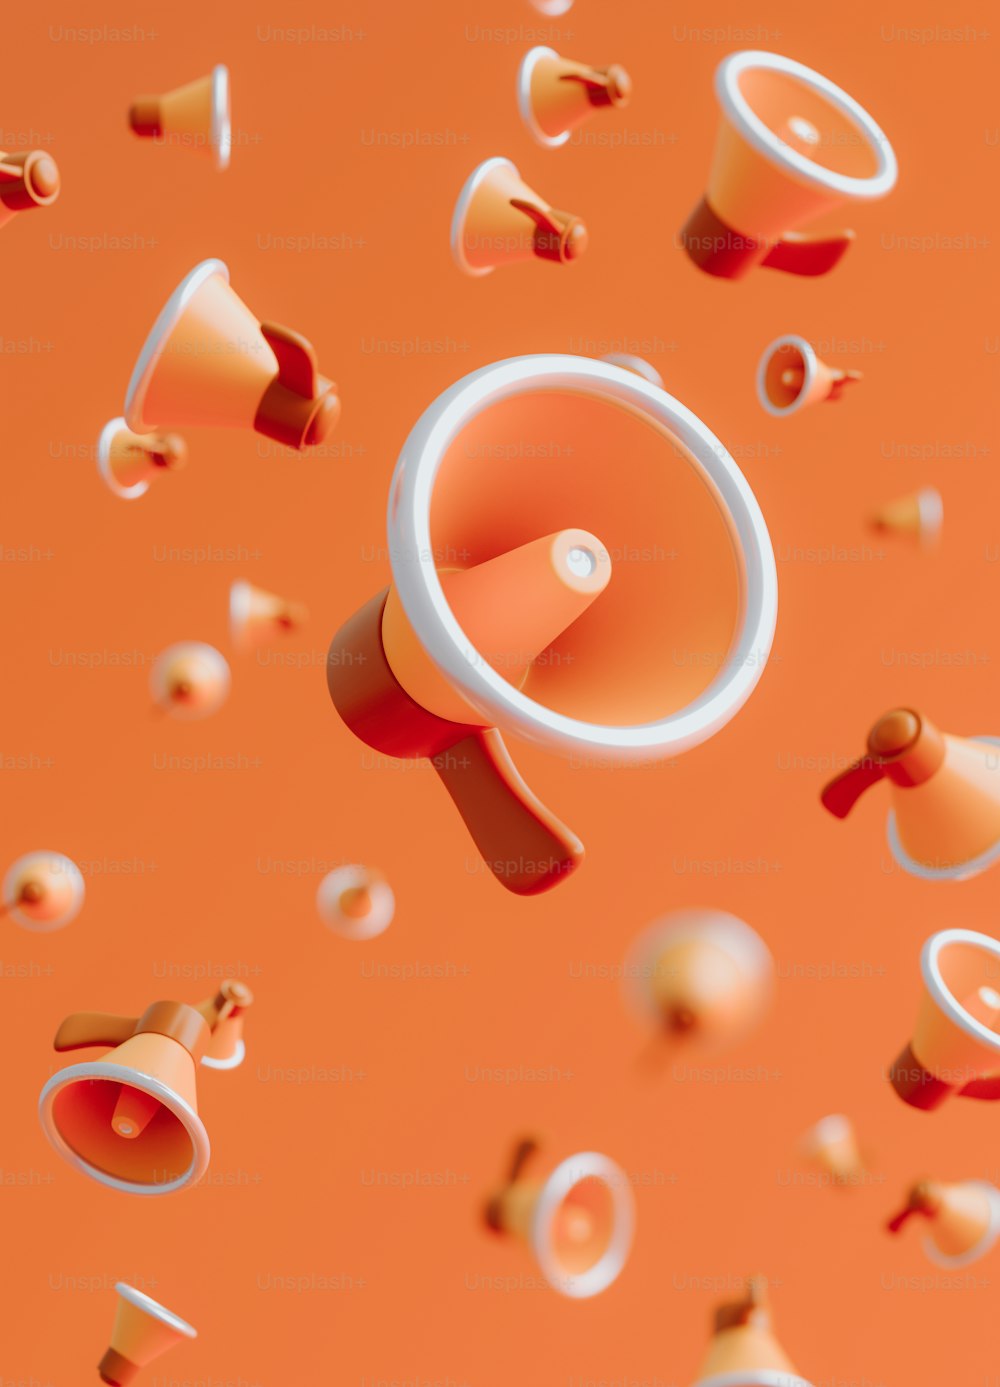 un fondo naranja con un altavoz rodeado de confeti